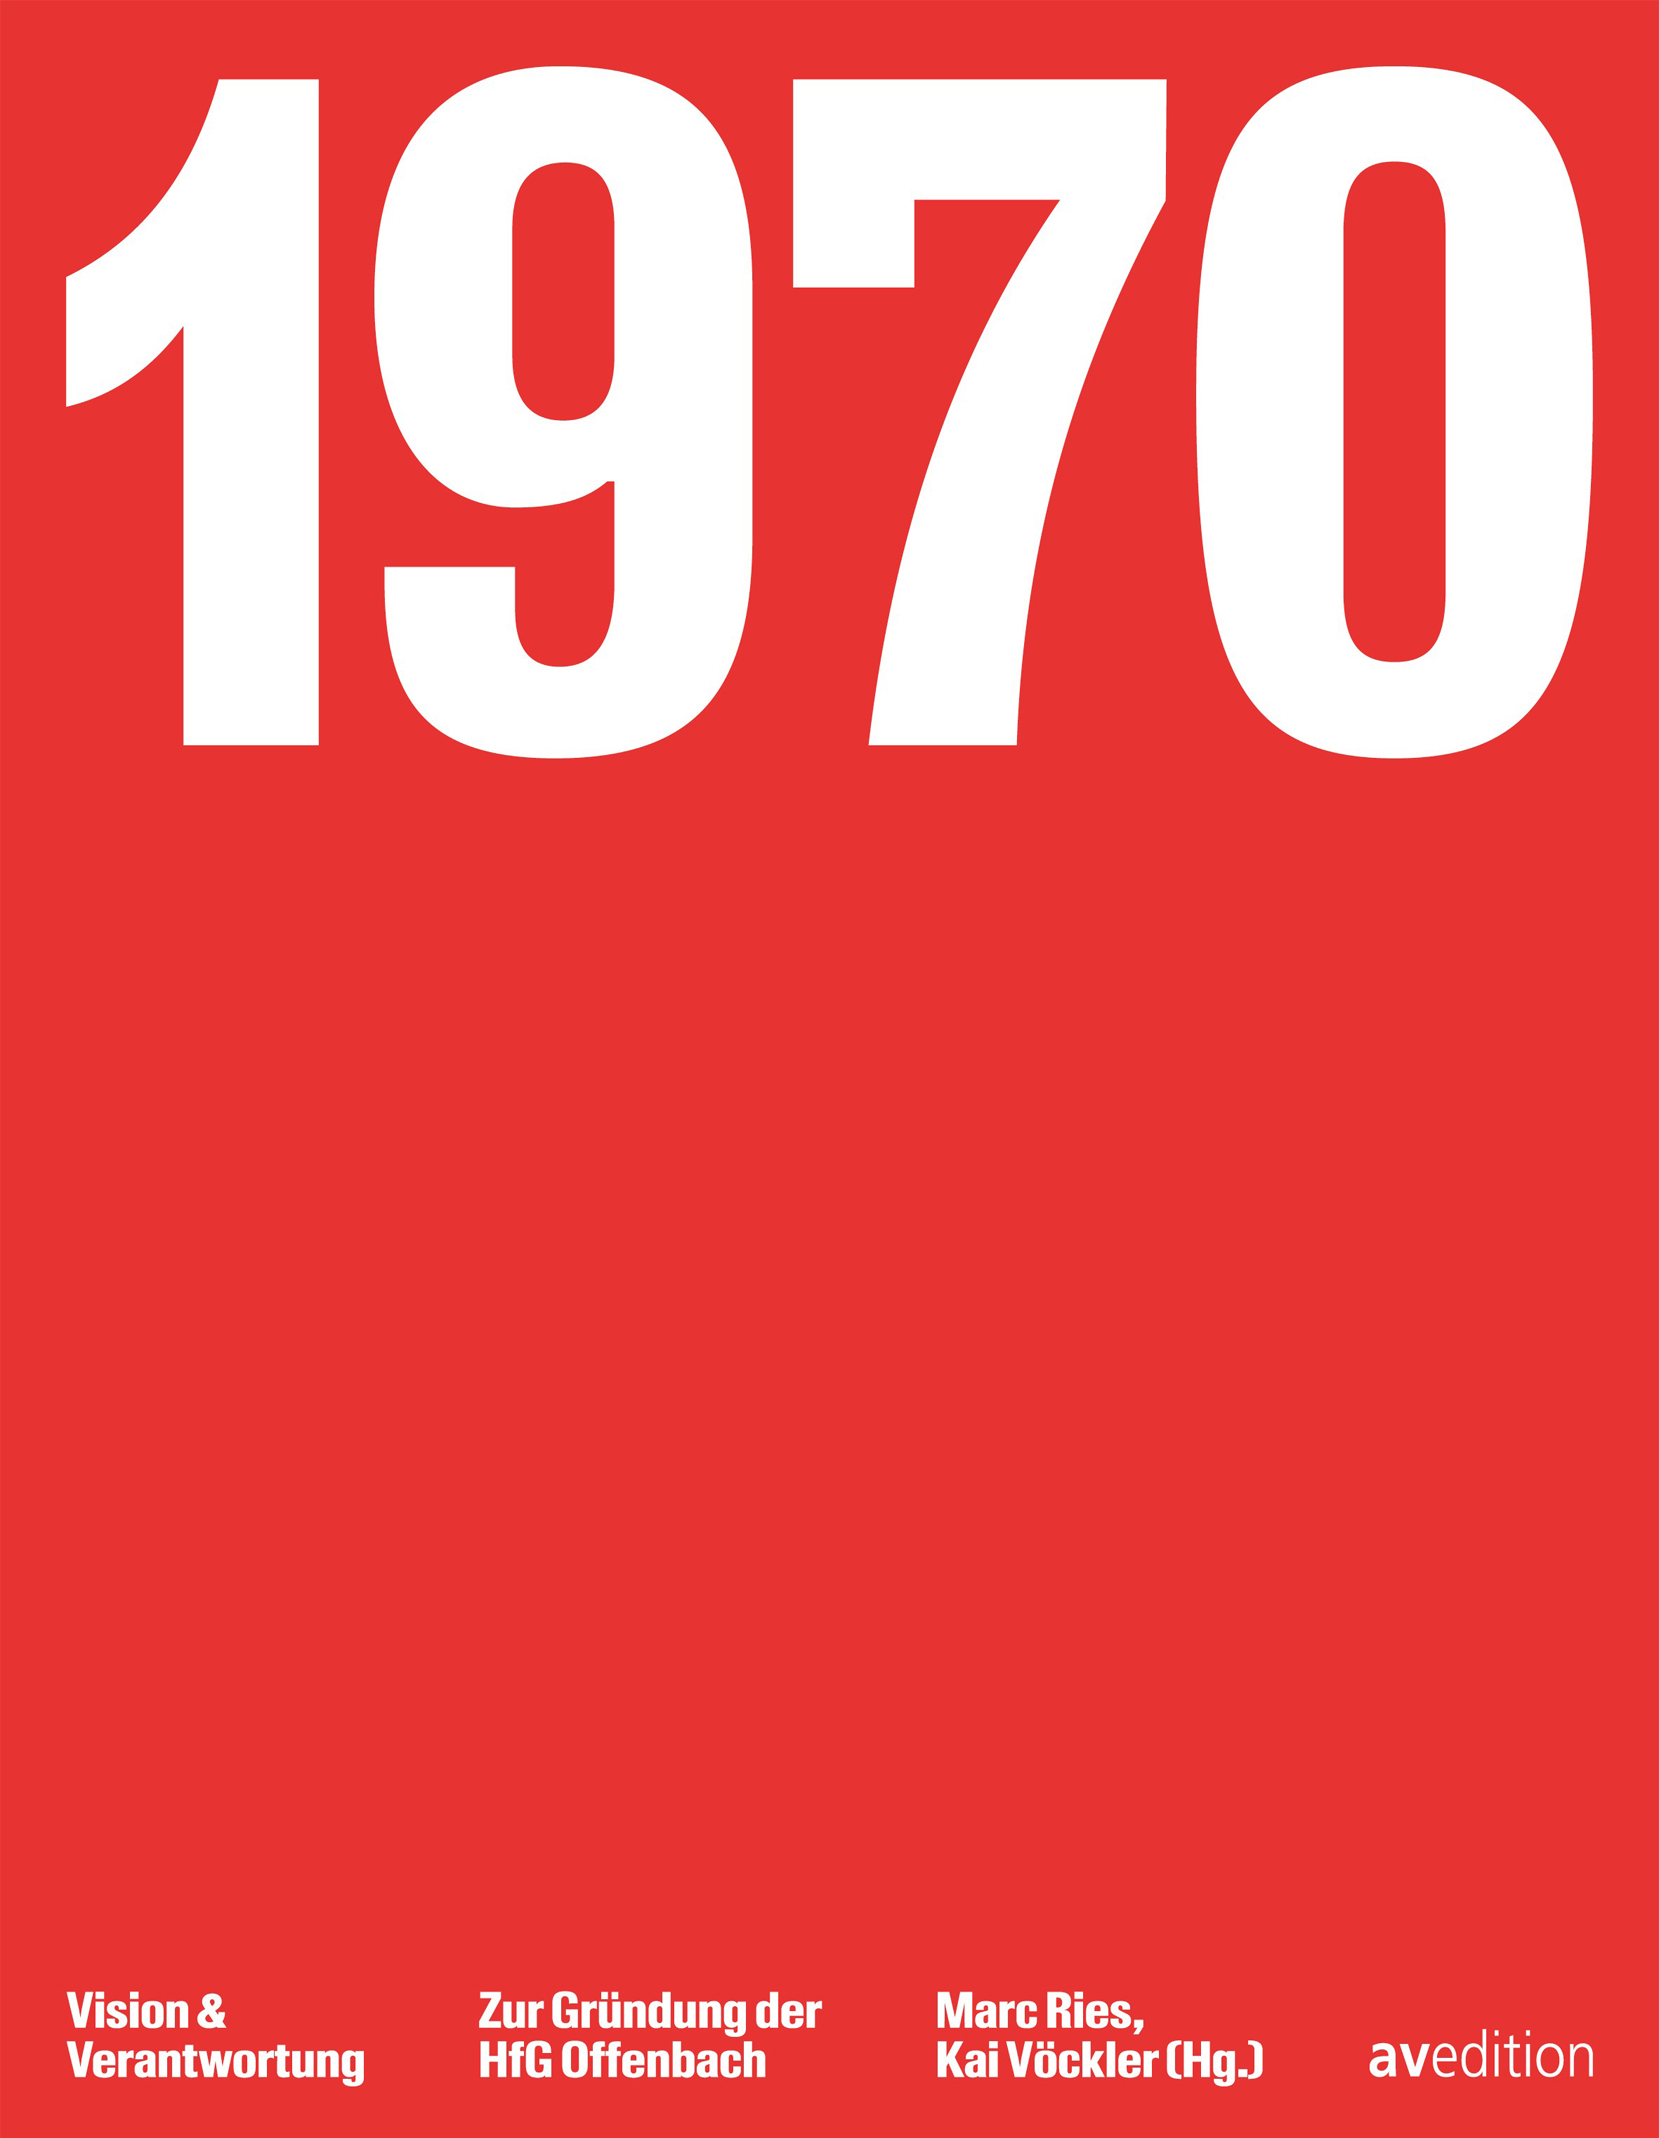 Vision und Verantwortung – Zur Gründung der HfG Offenbach  1970